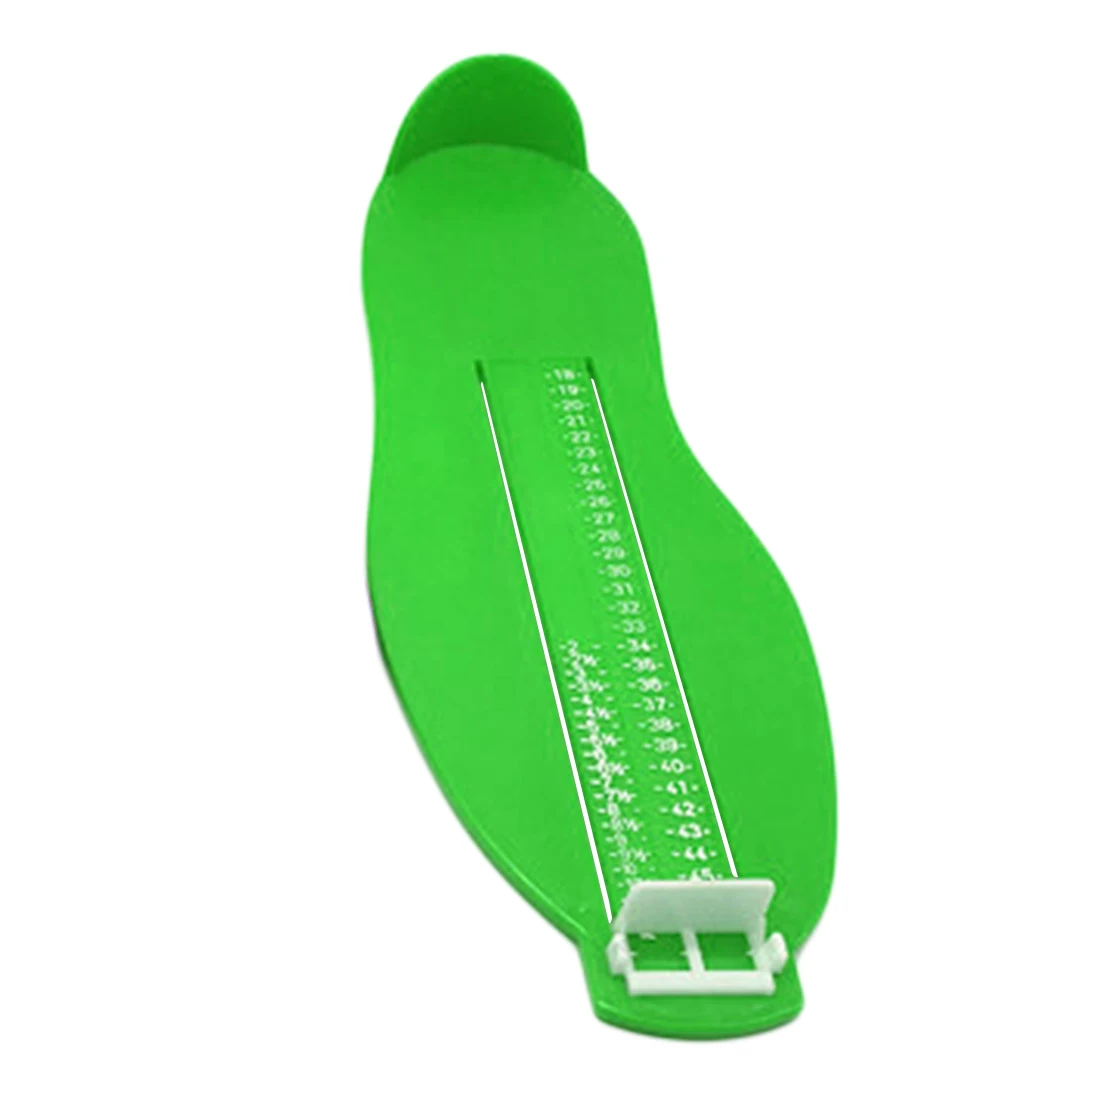 Горячее предложение 1 шт. для взрослых измерительное устройство для ног обувь Размер прибор измерение Линейка Инструмент устройство помощник 4 цвета